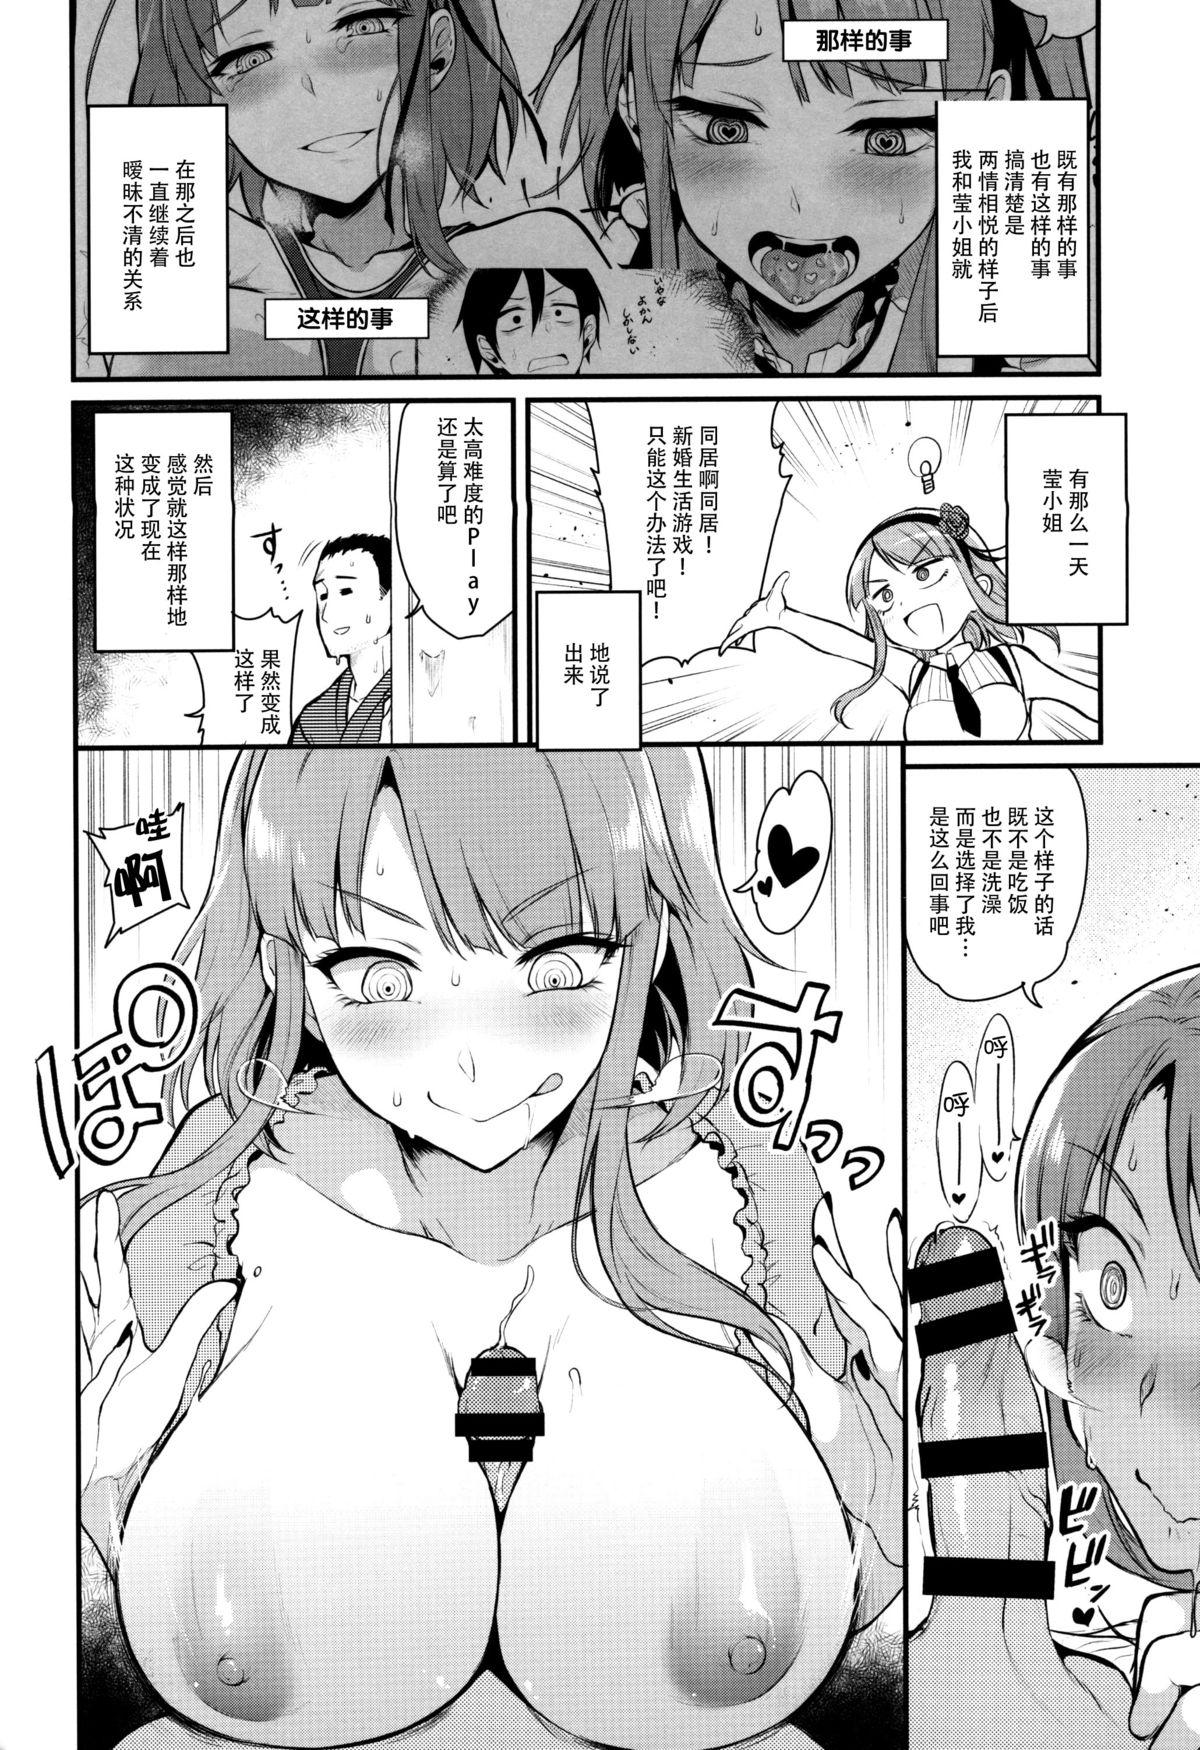 Petite Teenager Otona no Dagashi 3 - Dagashi kashi Mallu - Page 9